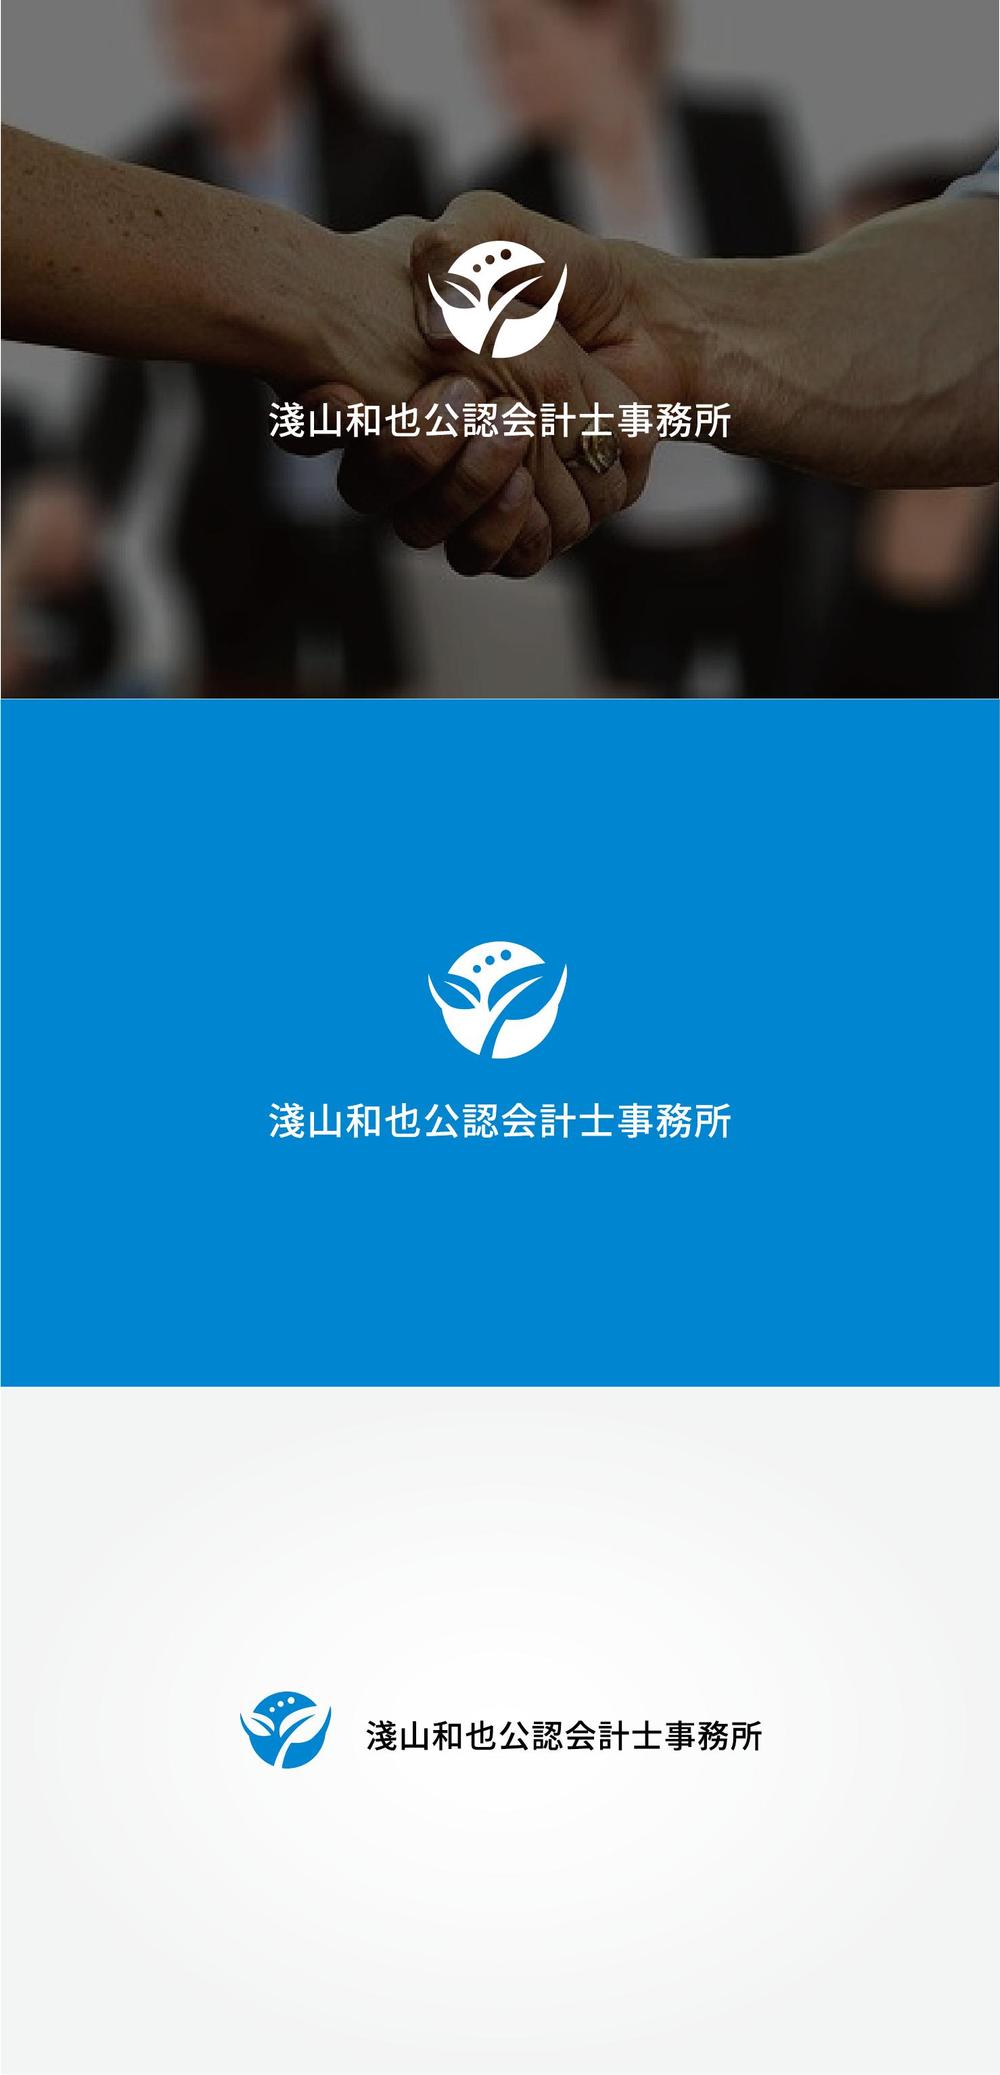 「淺山和也公認会計士事務所」のロゴ